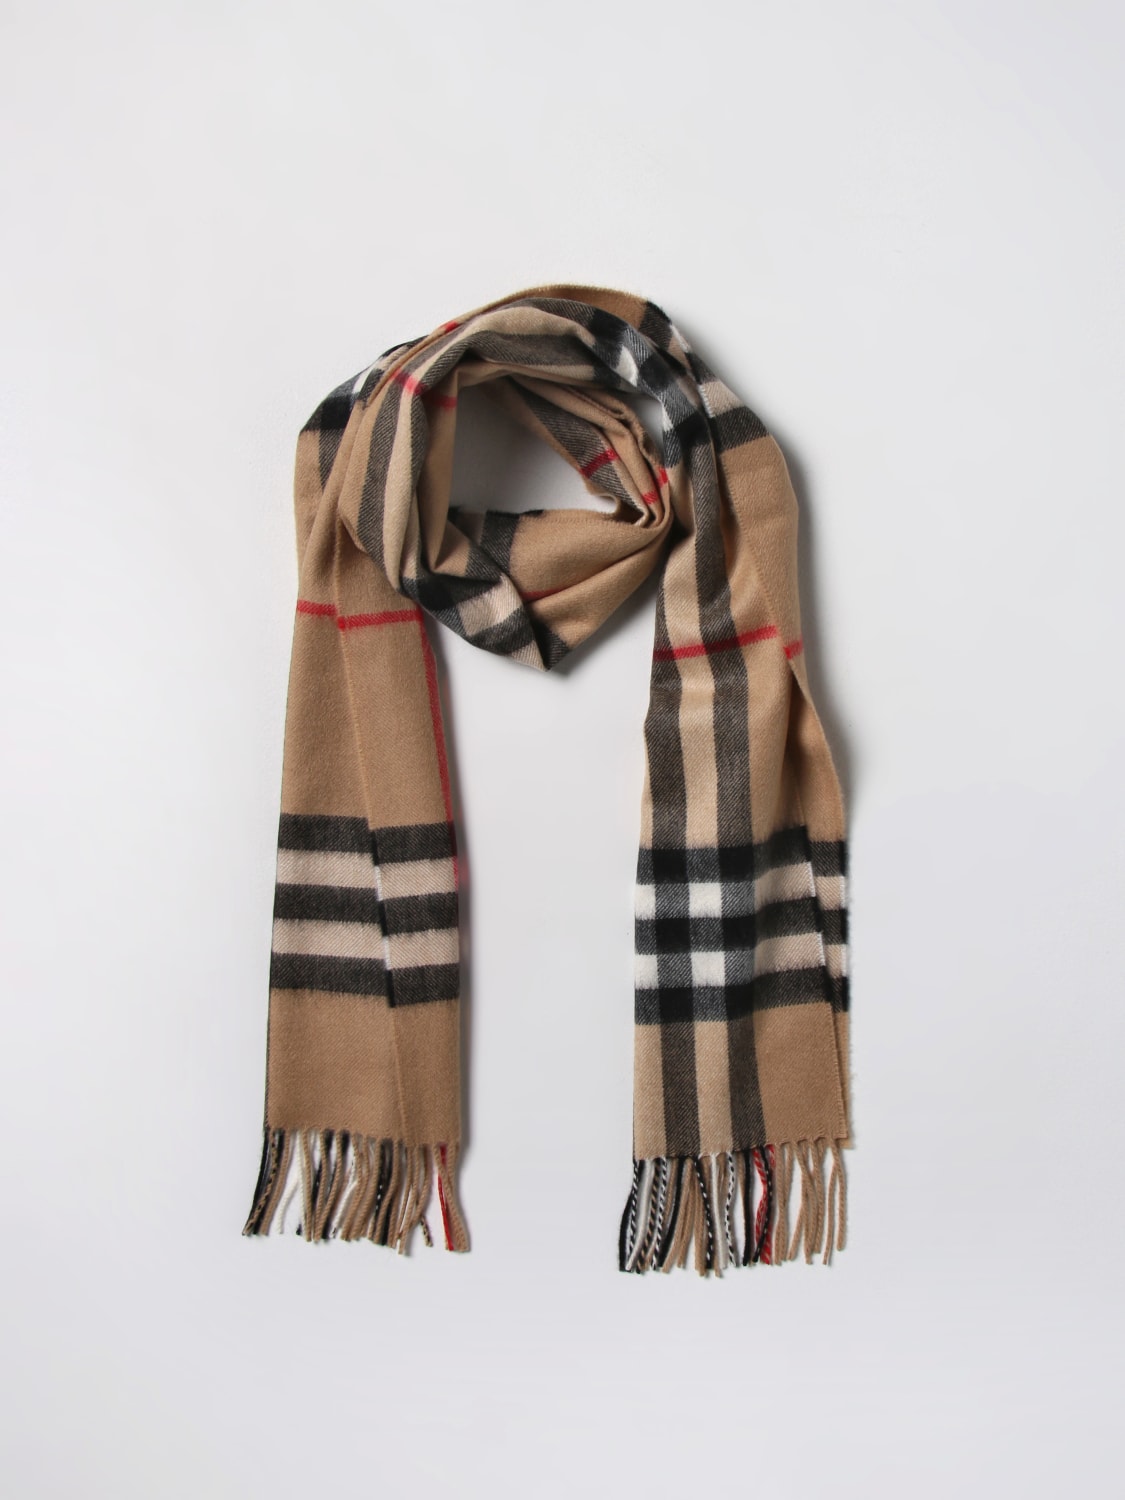 Igangværende græsplæne Aktuator BURBERRY: Vintage Check scarf in cashmere - Beige | Burberry scarf 8056850  online at GIGLIO.COM